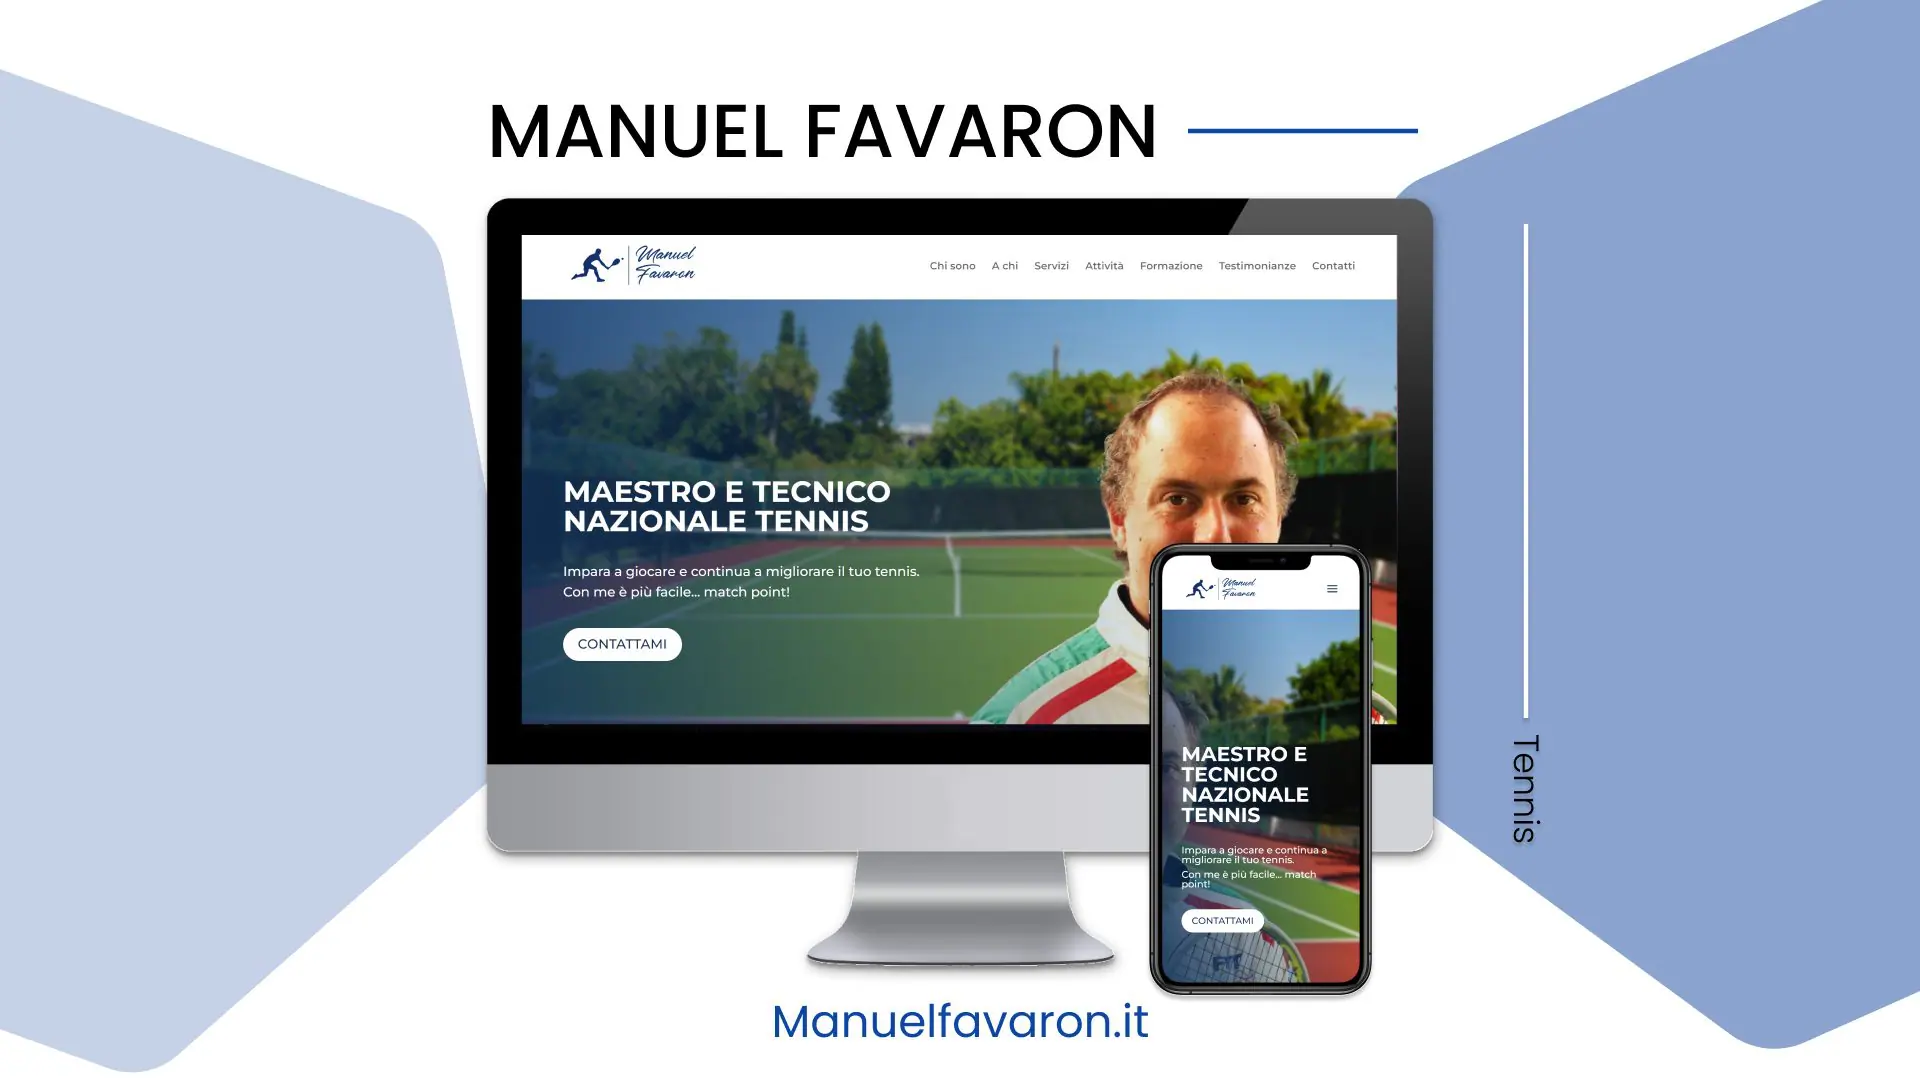 Manuel Favaron